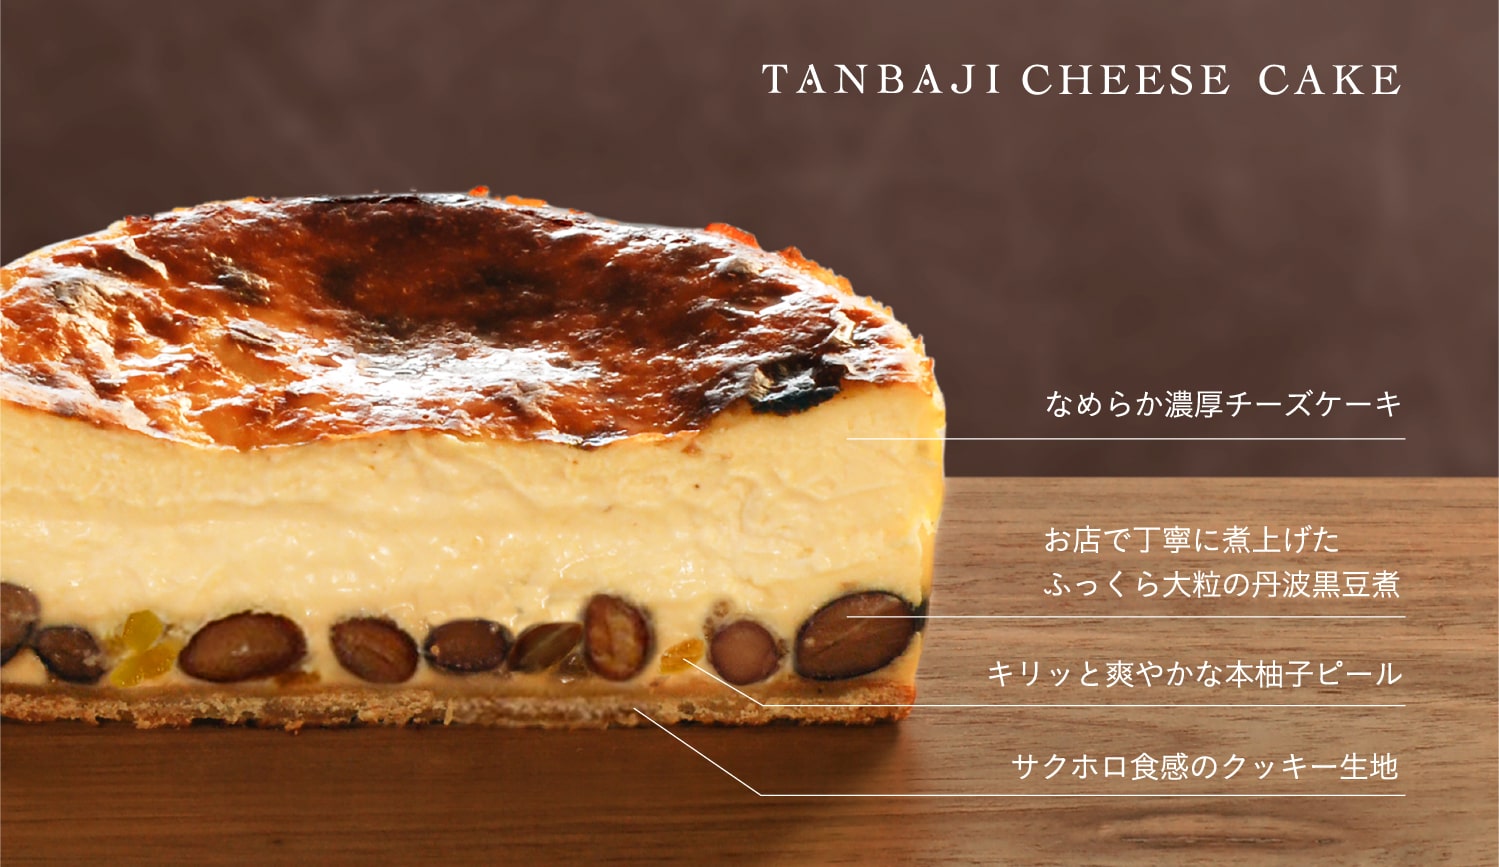 TANBAJI CHEESE CAKE